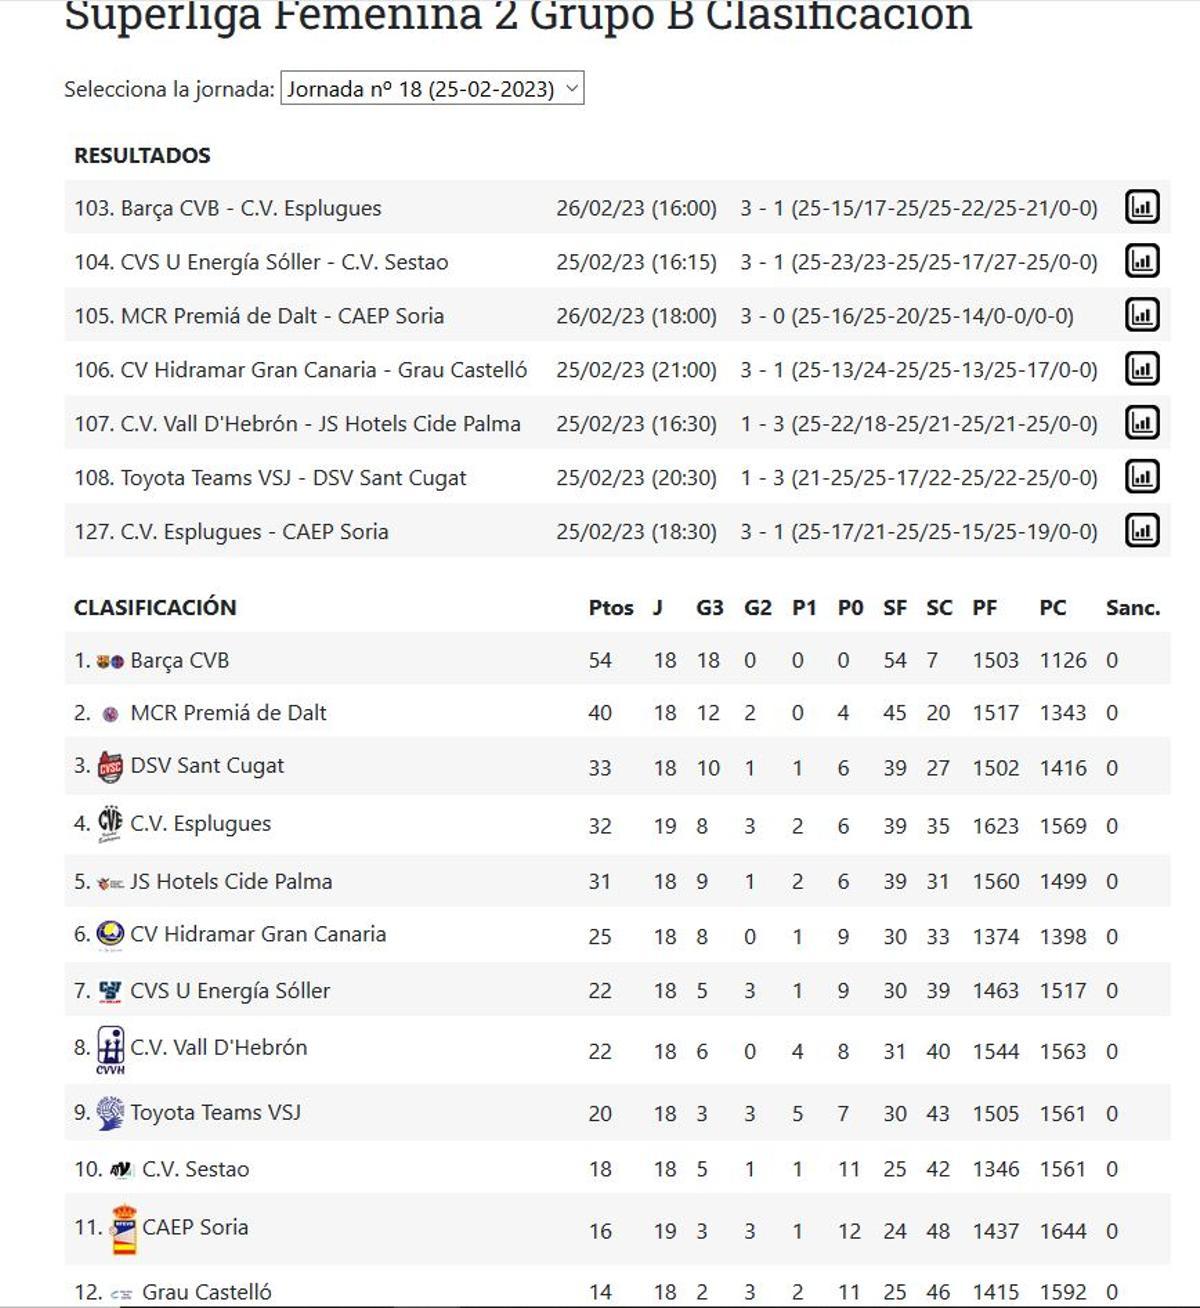 Resultados y clasificación del Grupo B de la Superliga 2 Femenina.